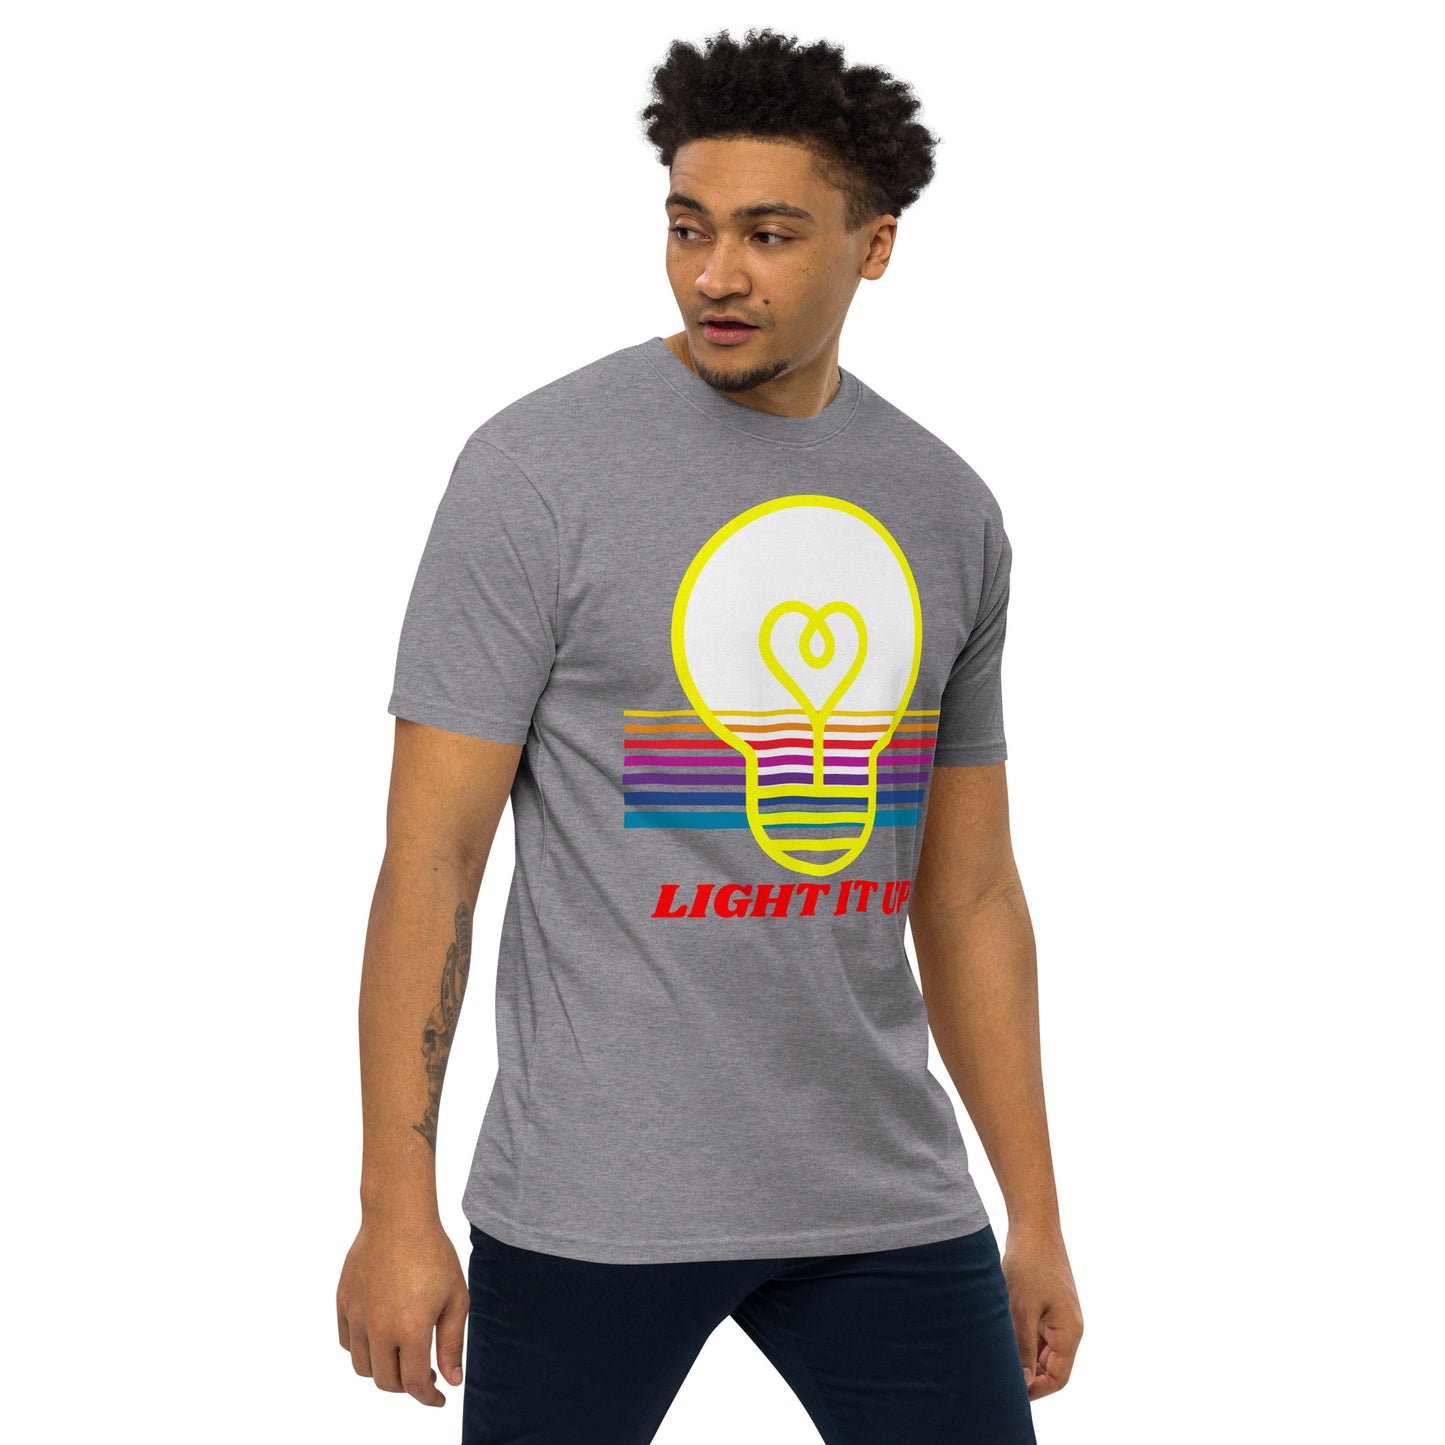 Light It Up! Heavyweight Unisex T-Shirt